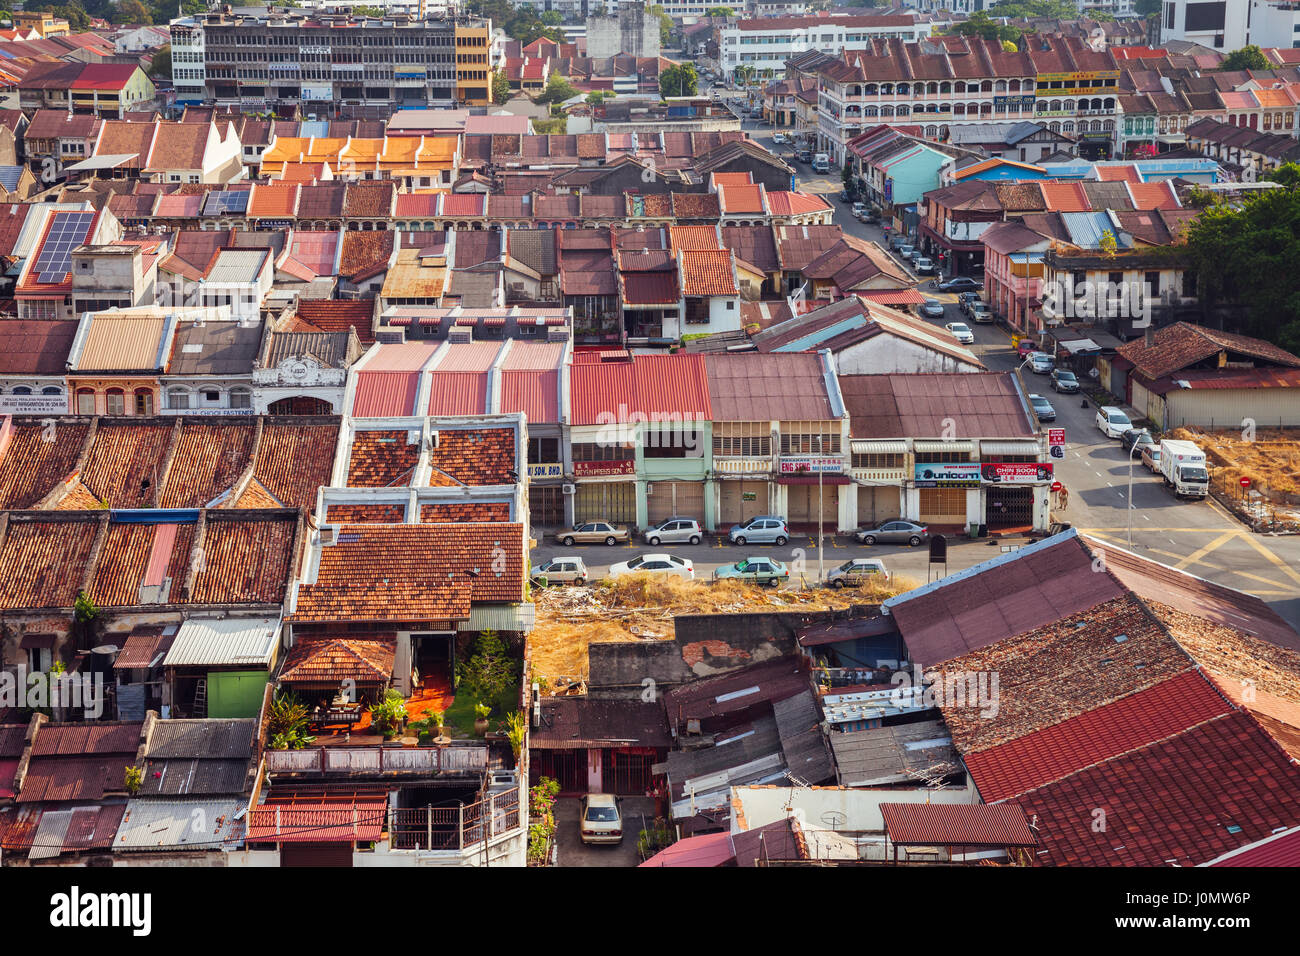 Georgetown, Malasia - Marzo 27, 2016: Vista panorámica de la parte histórica de la Georgetown en marzo 27, 2016 en Penang, Malasia. Foto de stock